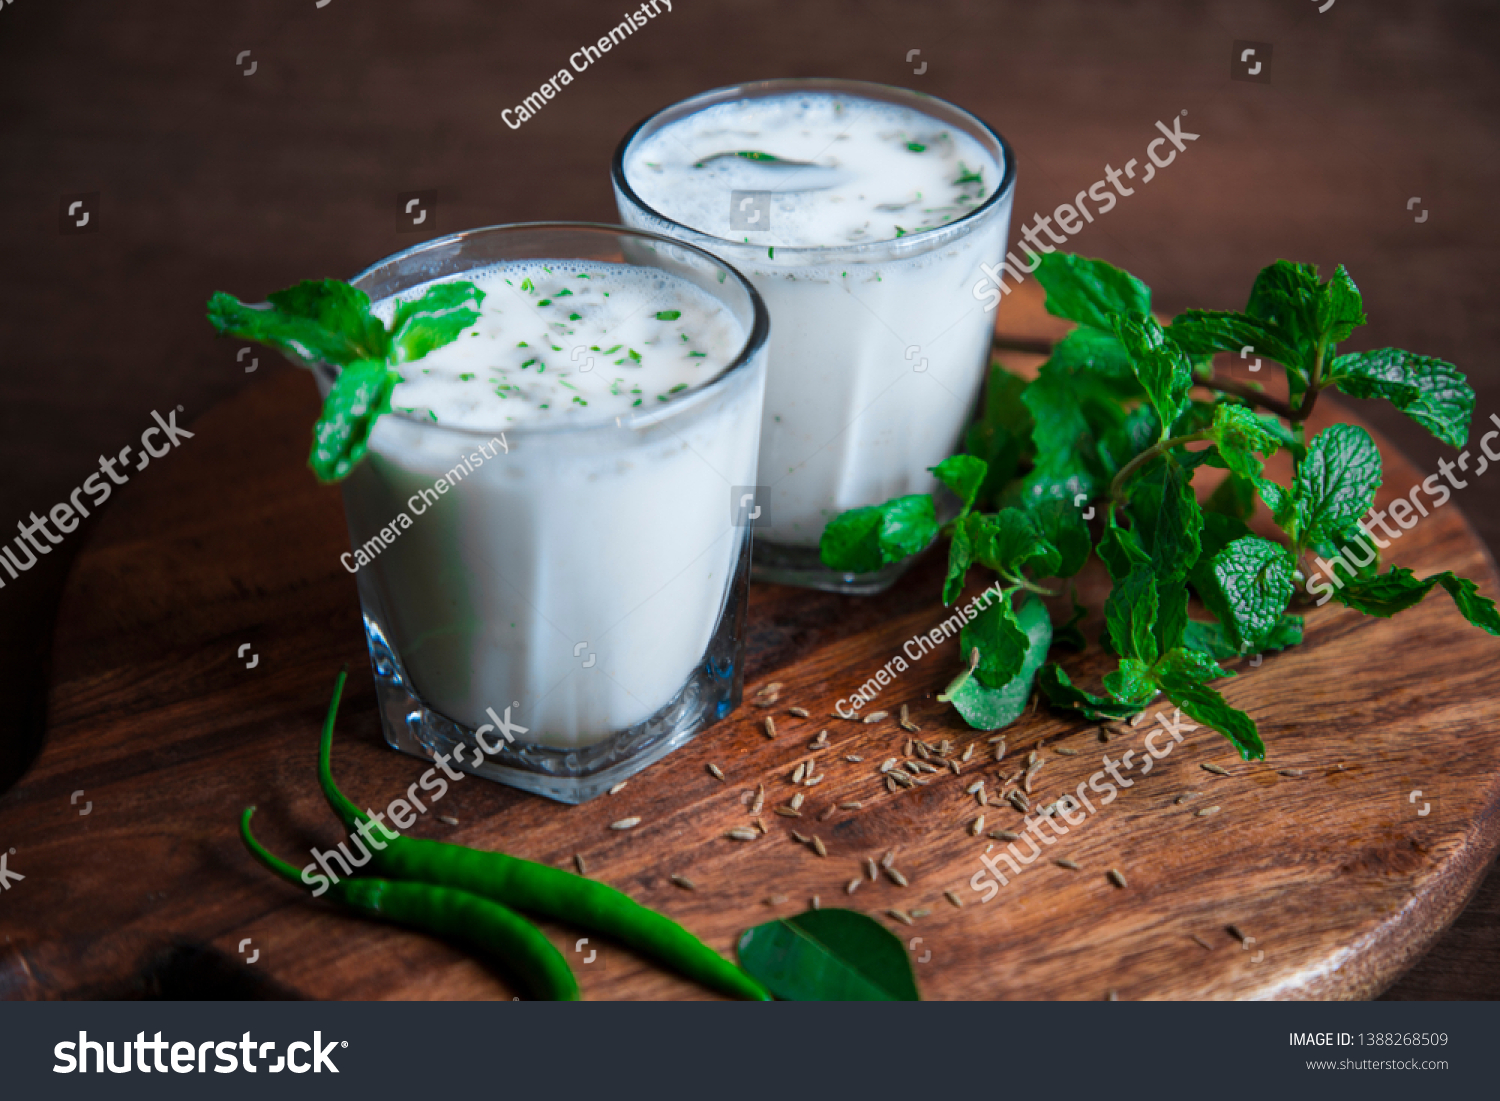 Summer cooler Buttermilk drink. Made of yogurt. Buttermilk made with yogurt. #1388268509